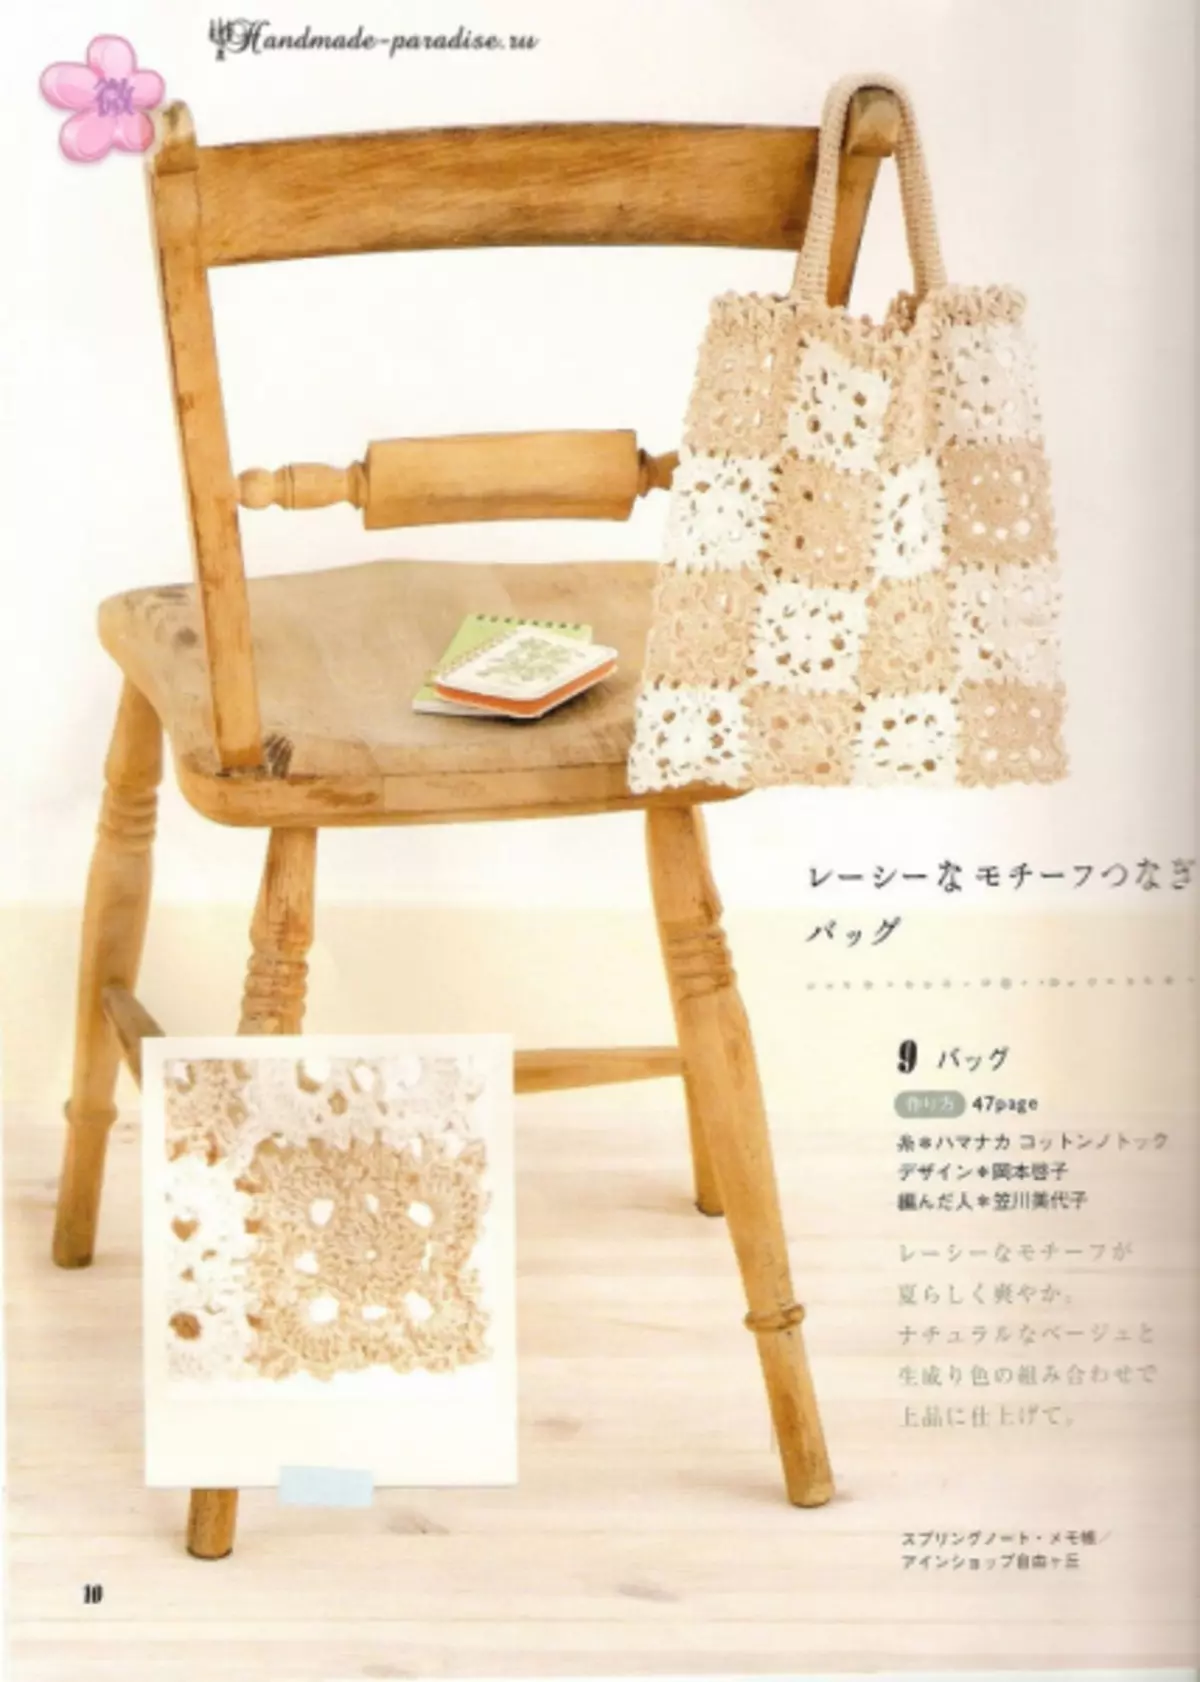 Crochet समर अॅक्सेसरीज. योजनांसह जपानी मासिक